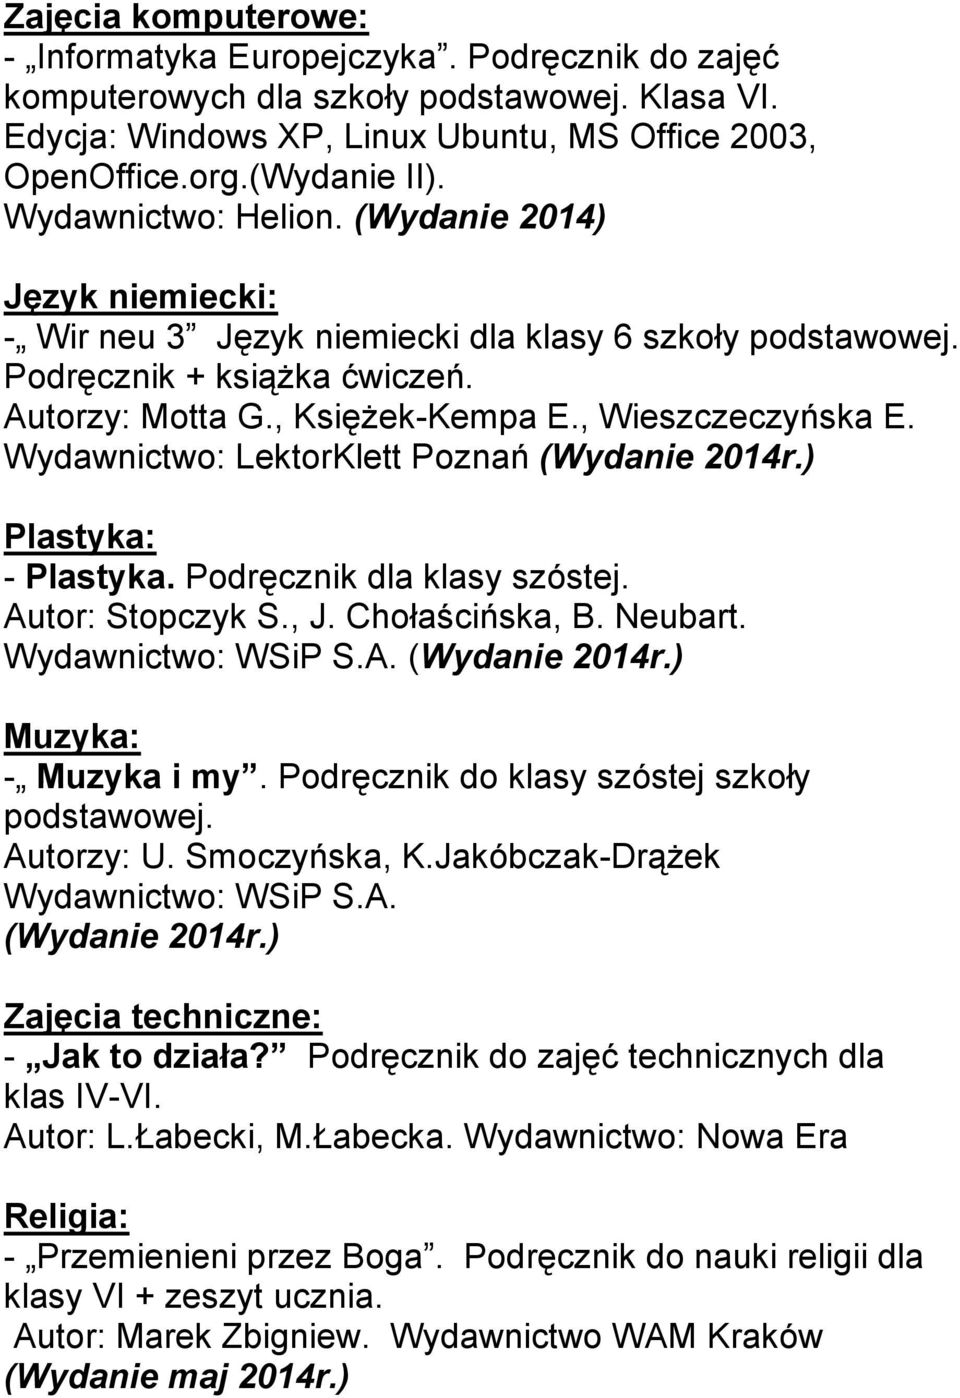 Wydawnictwo: LektorKlett Poznań (Wydanie 2014r.) Plastyka: - Plastyka. Podręcznik dla klasy szóstej. Autor: Stopczyk S., J. Chołaścińska, B. Neubart. (Wydanie 2014r.) Muzyka: - Muzyka i my.